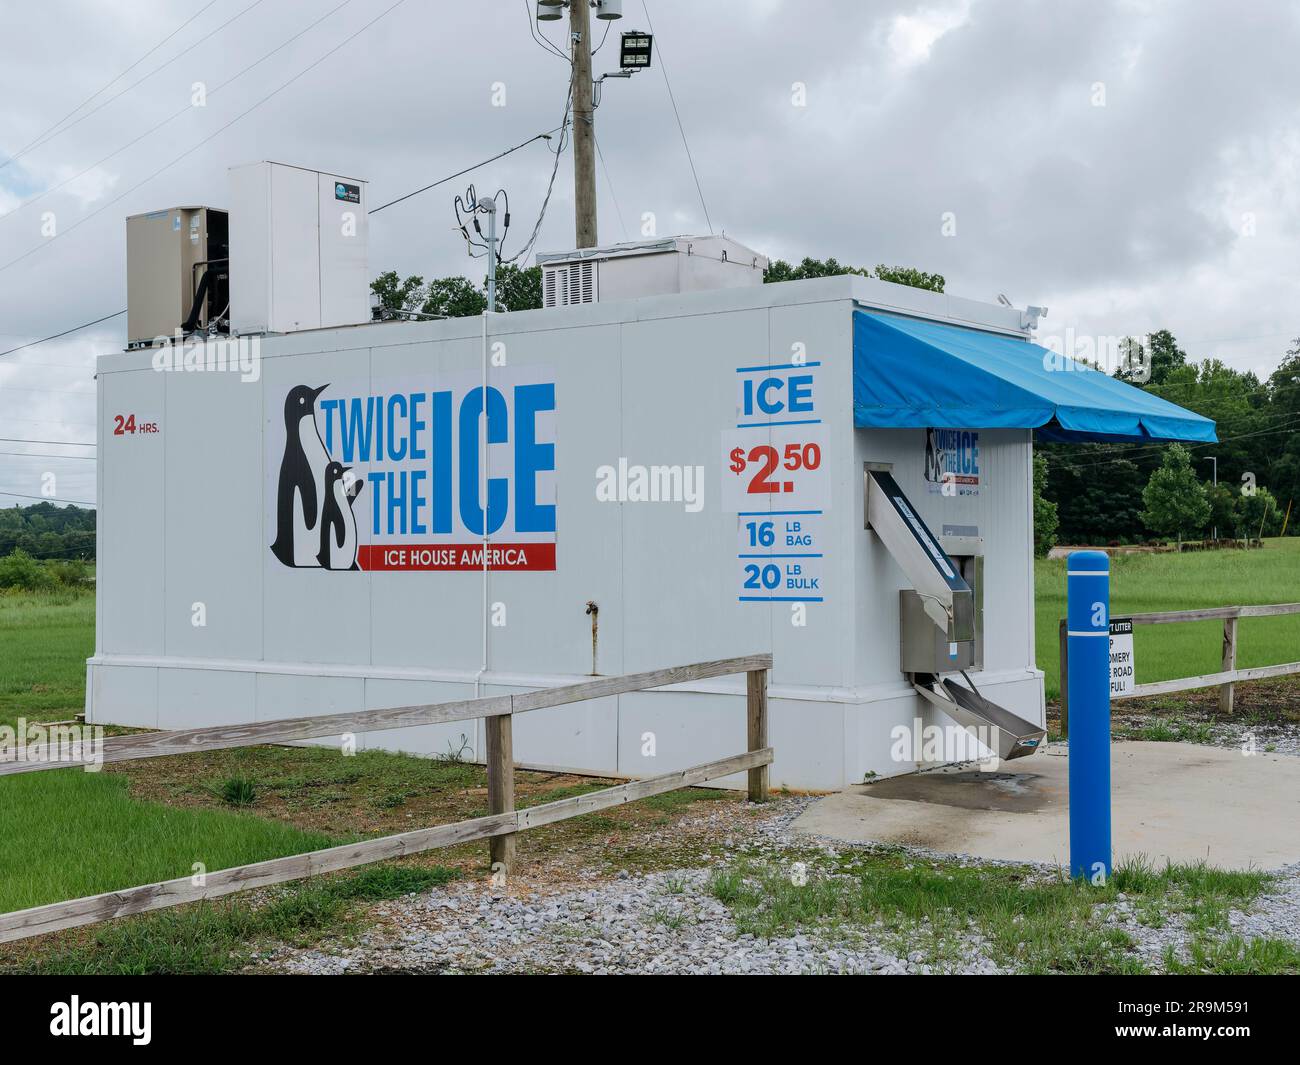 Grande macchina per il ghiaccio indipendente per l'acquisto fai da te di ghiaccio in sacchetti, la più famosa durante i caldi mesi estivi a Montgomery, Alabama, Stati Uniti. Foto Stock